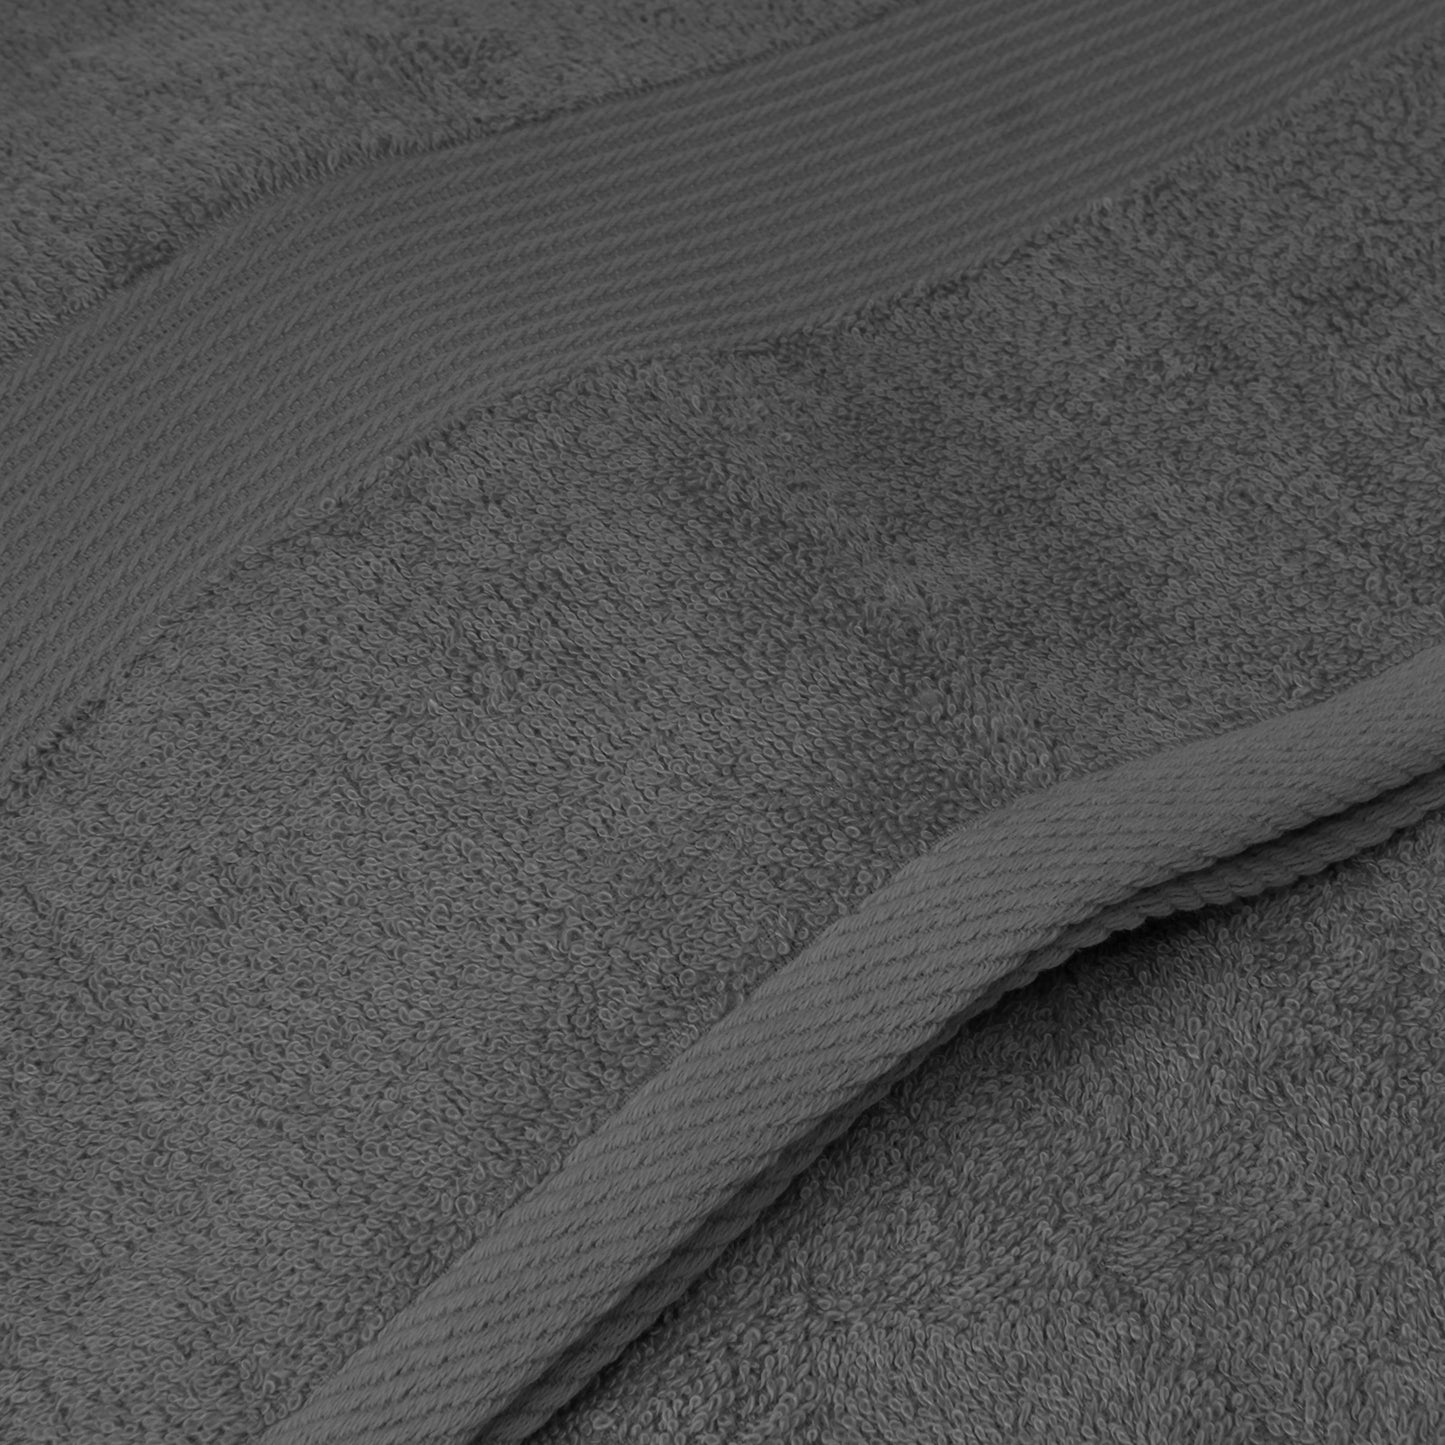 Cotton Bamboo Towel 5-Piece Set